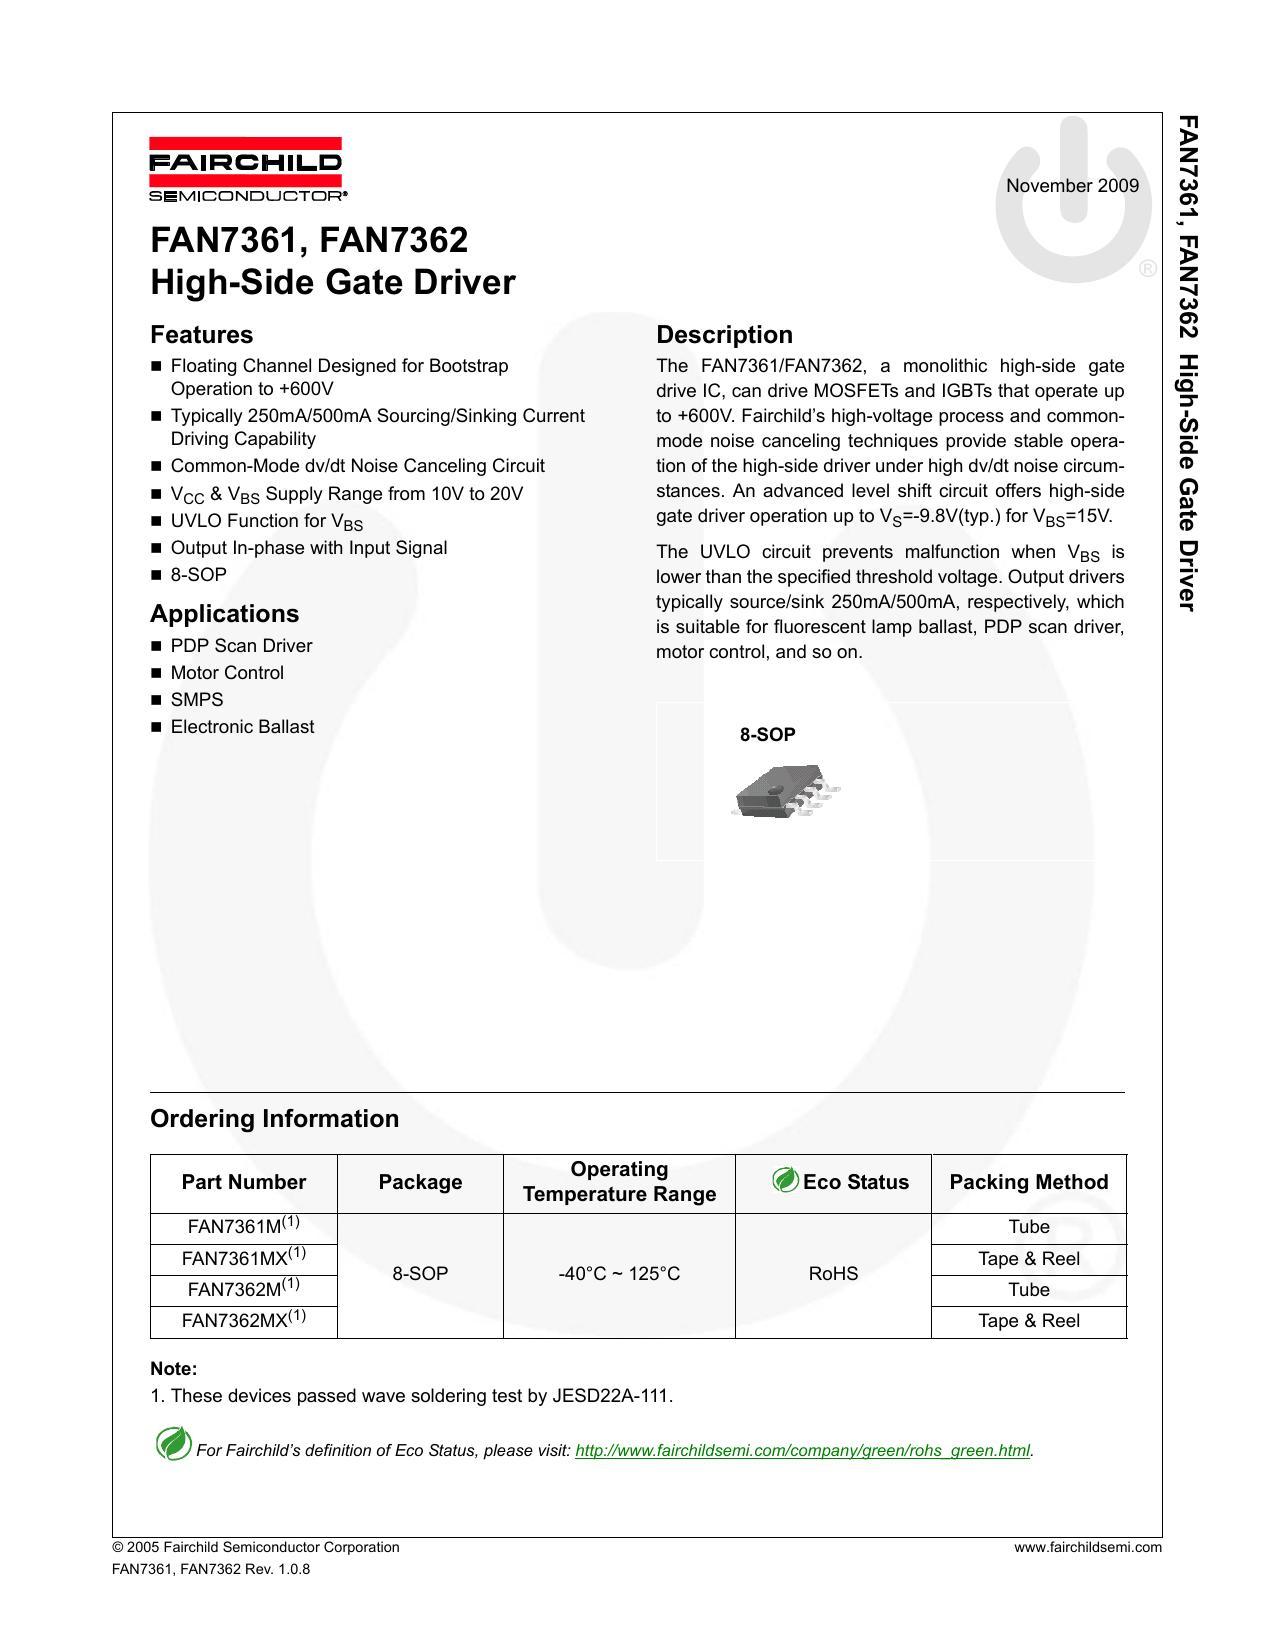 fan7361-fan7362-high-side-gate-driver.pdf